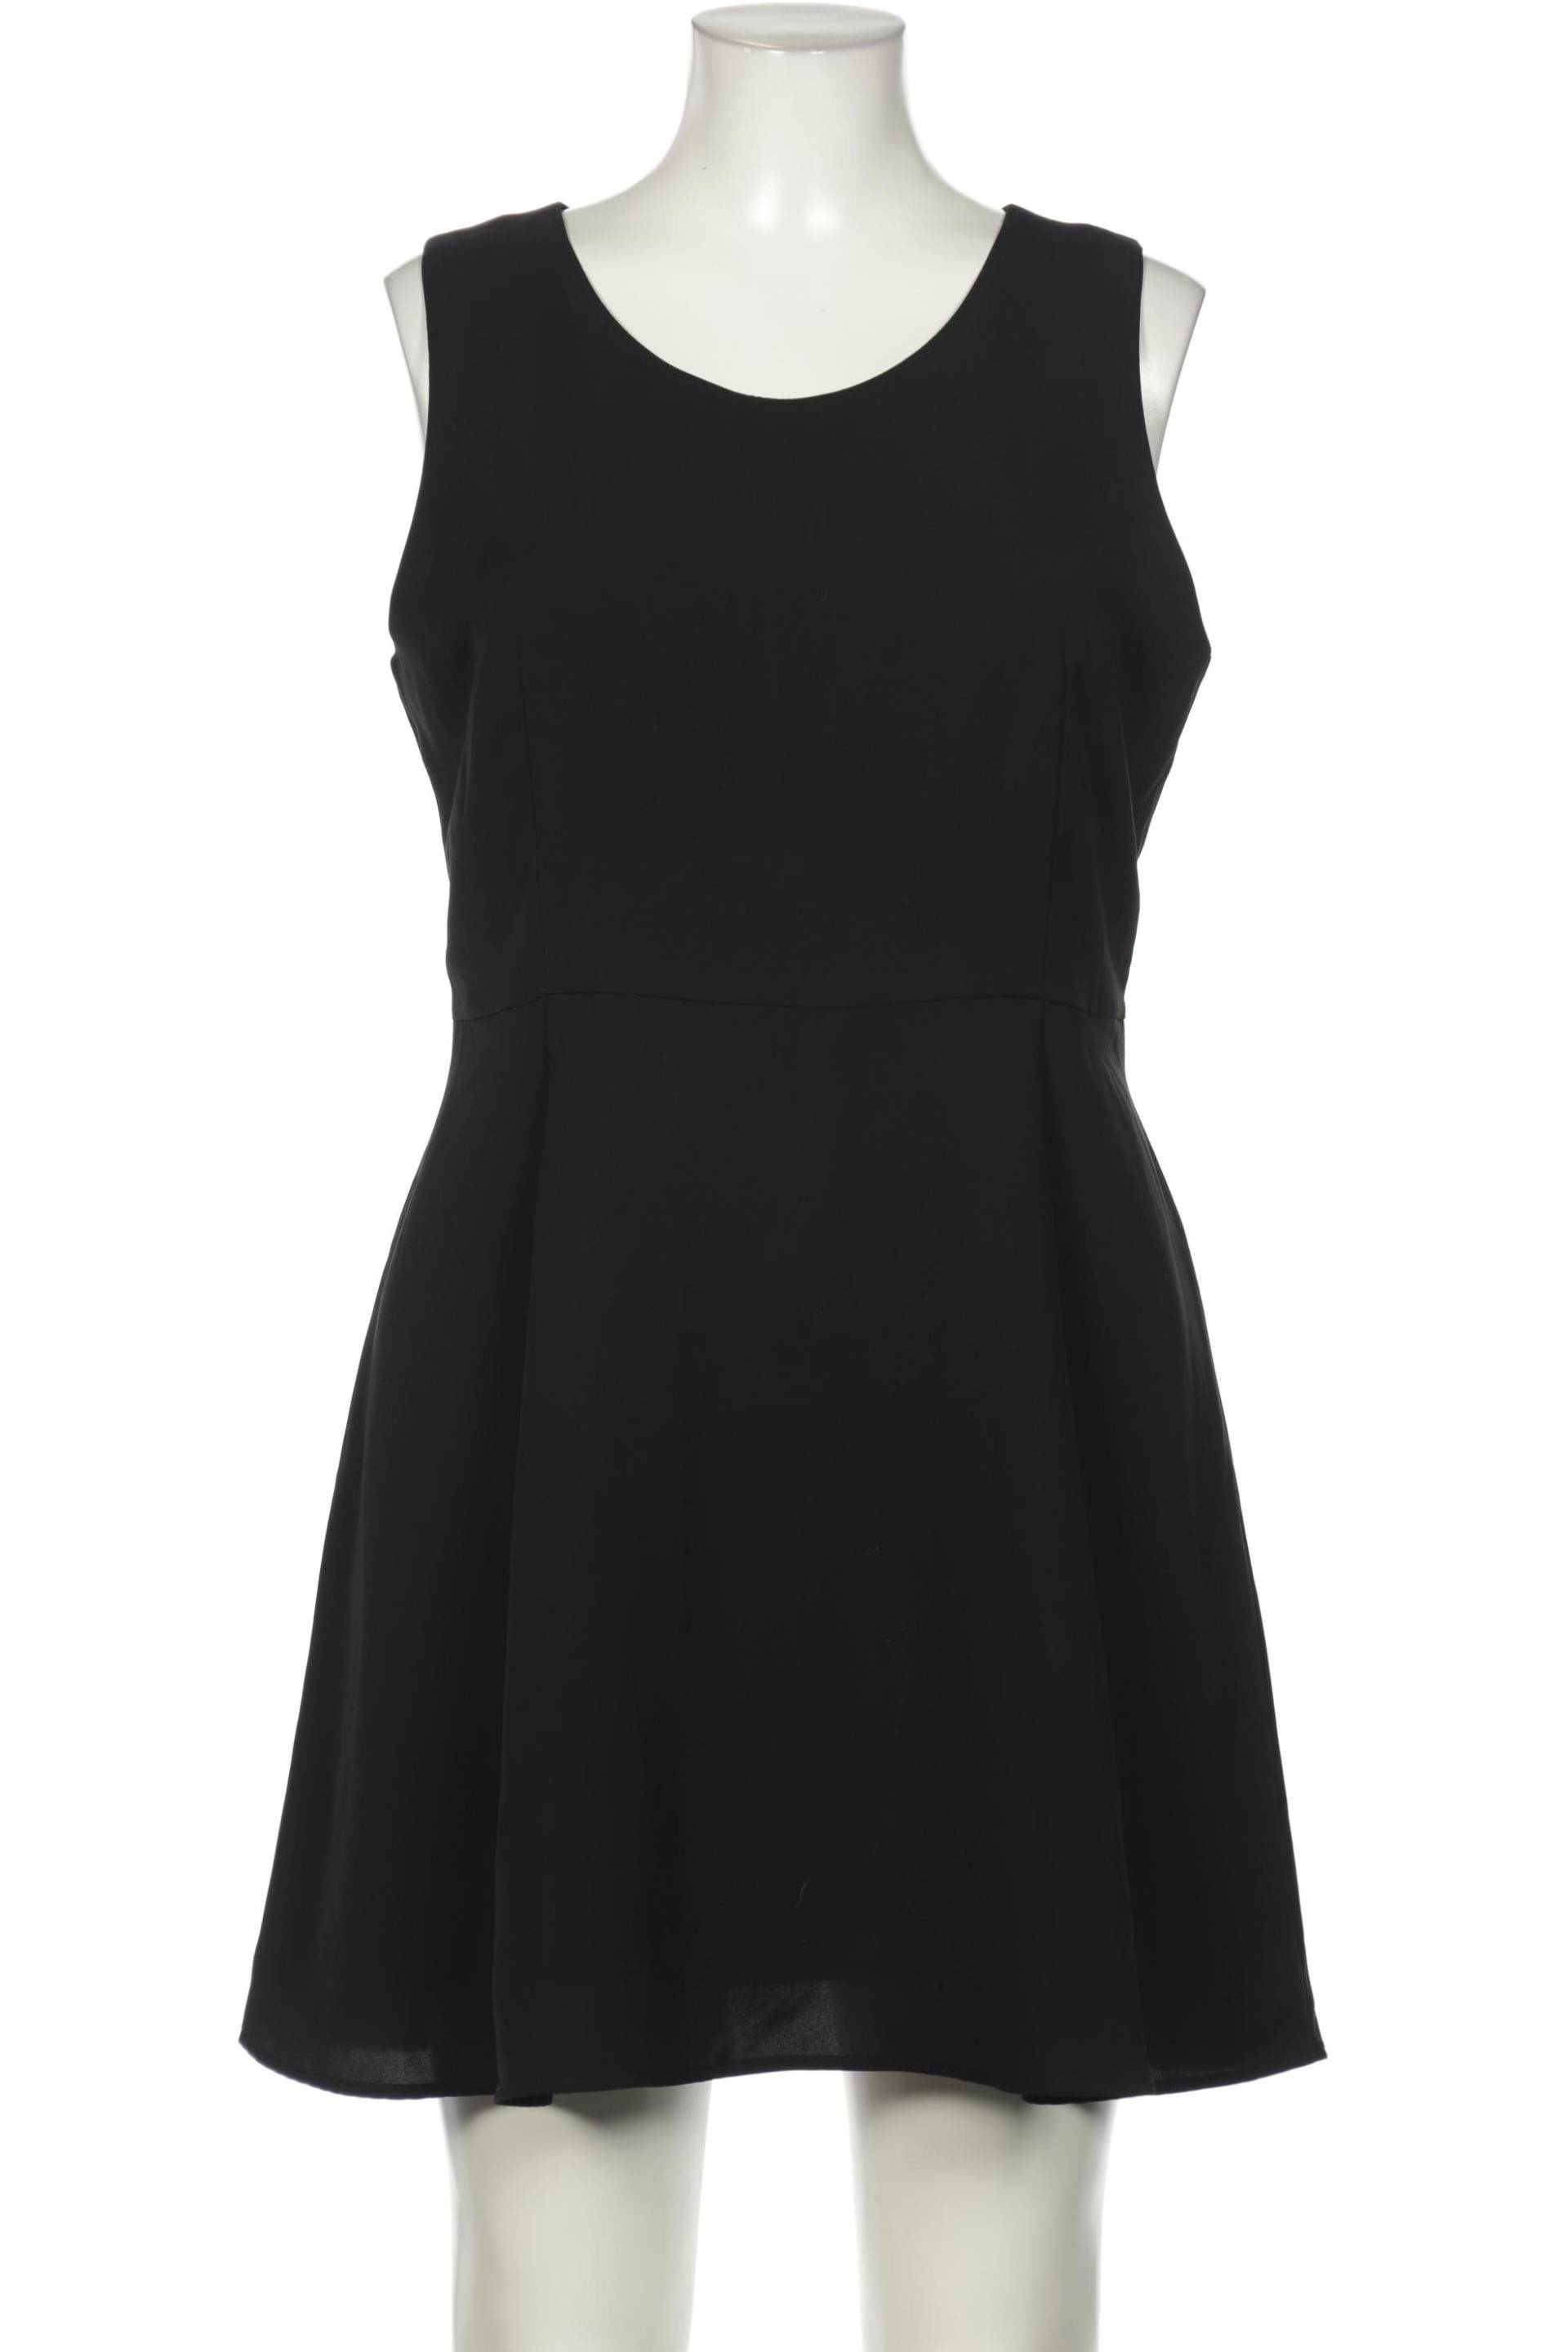 uniqlo Damen Kleid, schwarz, Gr. 44 von uniqlo